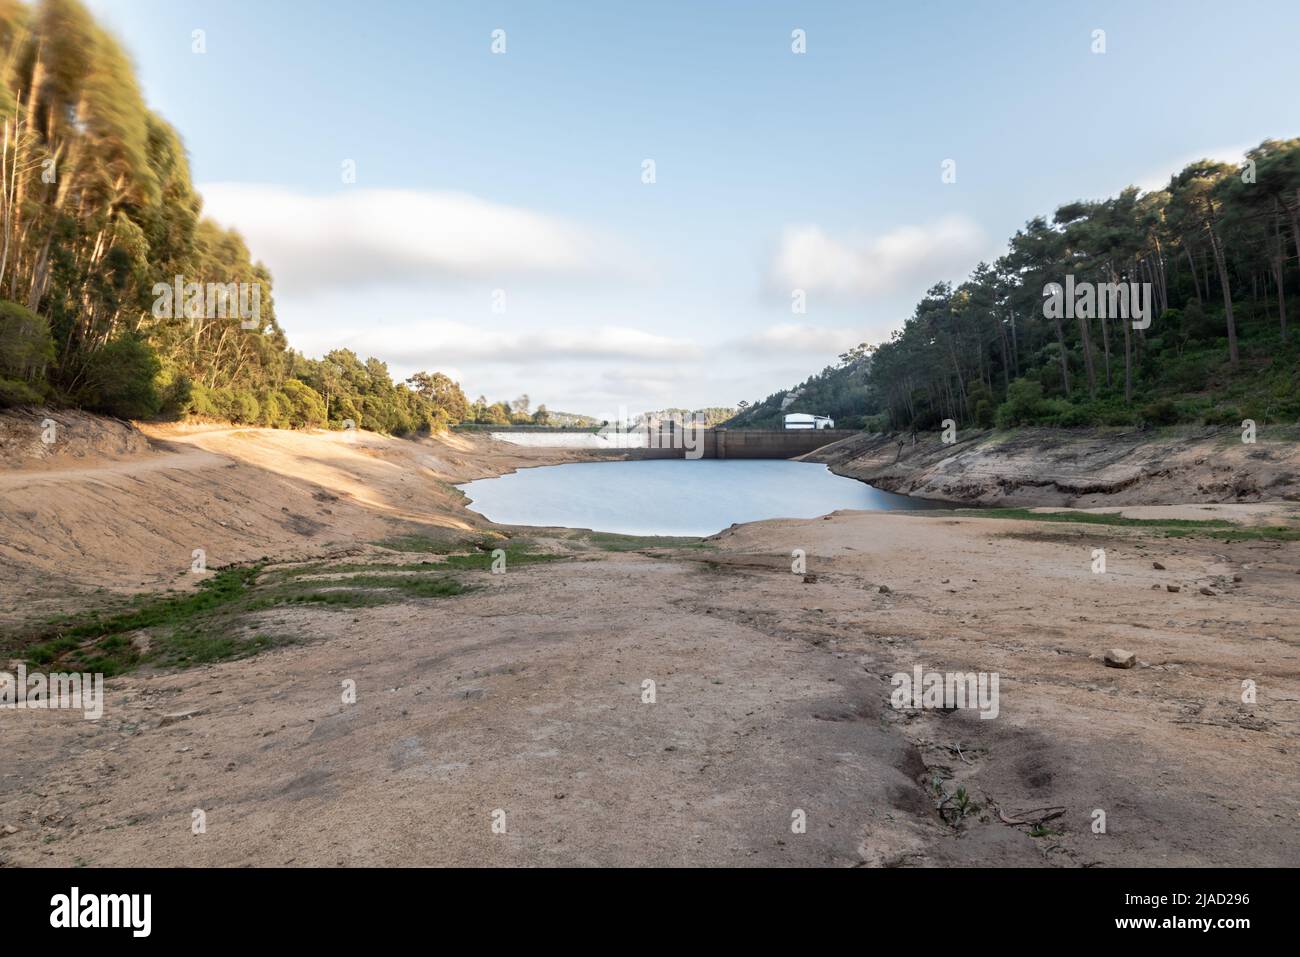 Serra de Sintra, Portugal - 22. Mai 2022: Langzeitbelichtung des Stausees des Flusses Mula - Barragem do Rio Mula - während der Frühjahrstrockenheit, die das Wasser niedrig lässt Stockfoto